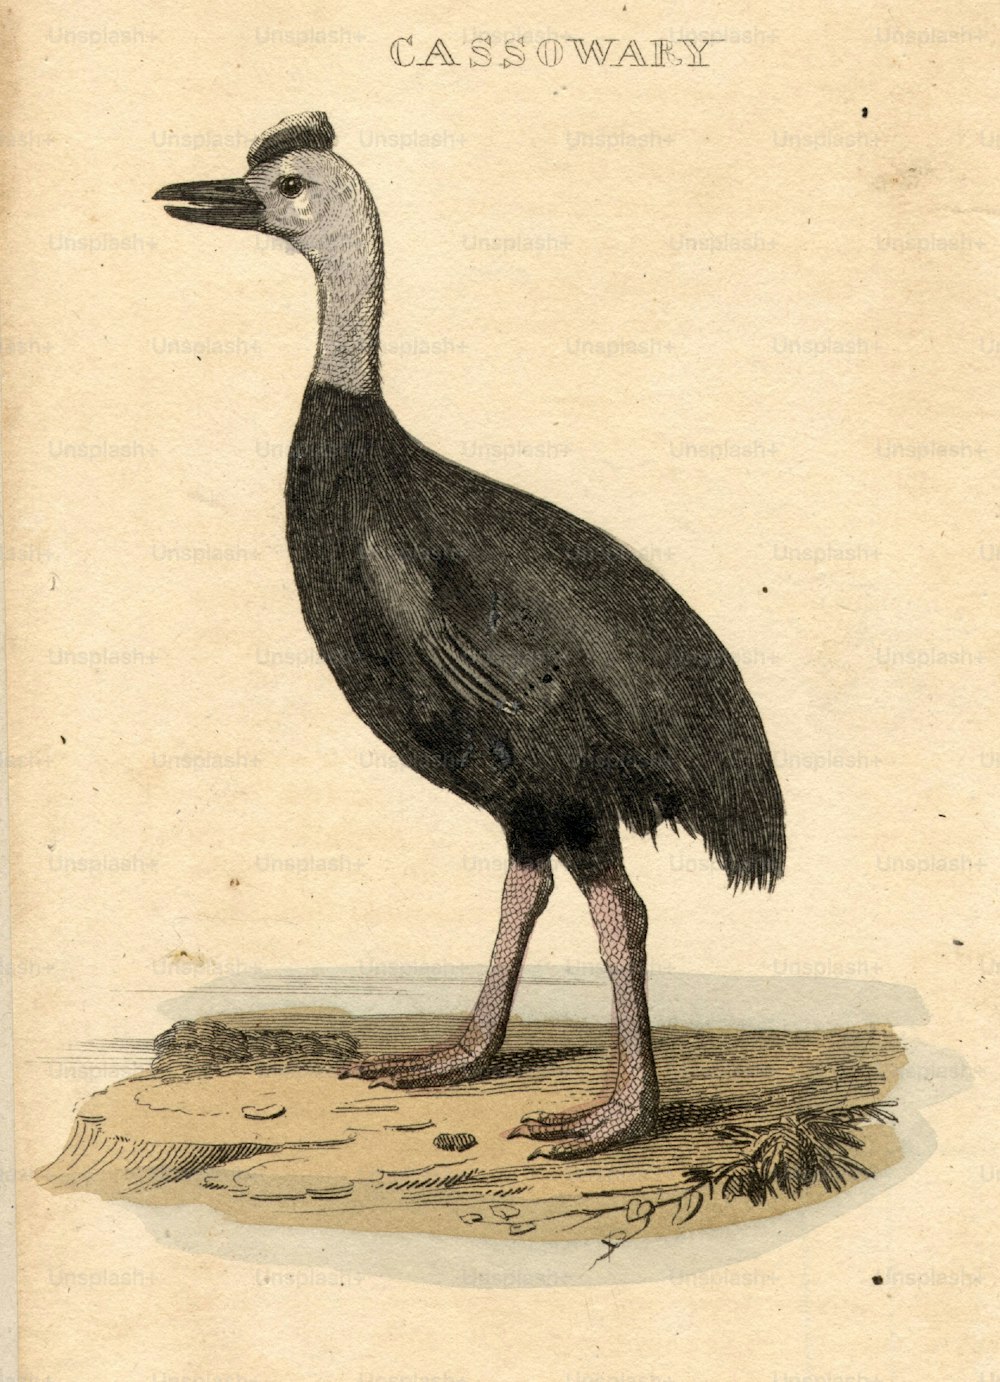 um 1800: Der Kasuar, eine Art flugunfähiger Vogel, der mit dem Emu verwandt ist.  (Foto von Hulton Archive / Getty Images)